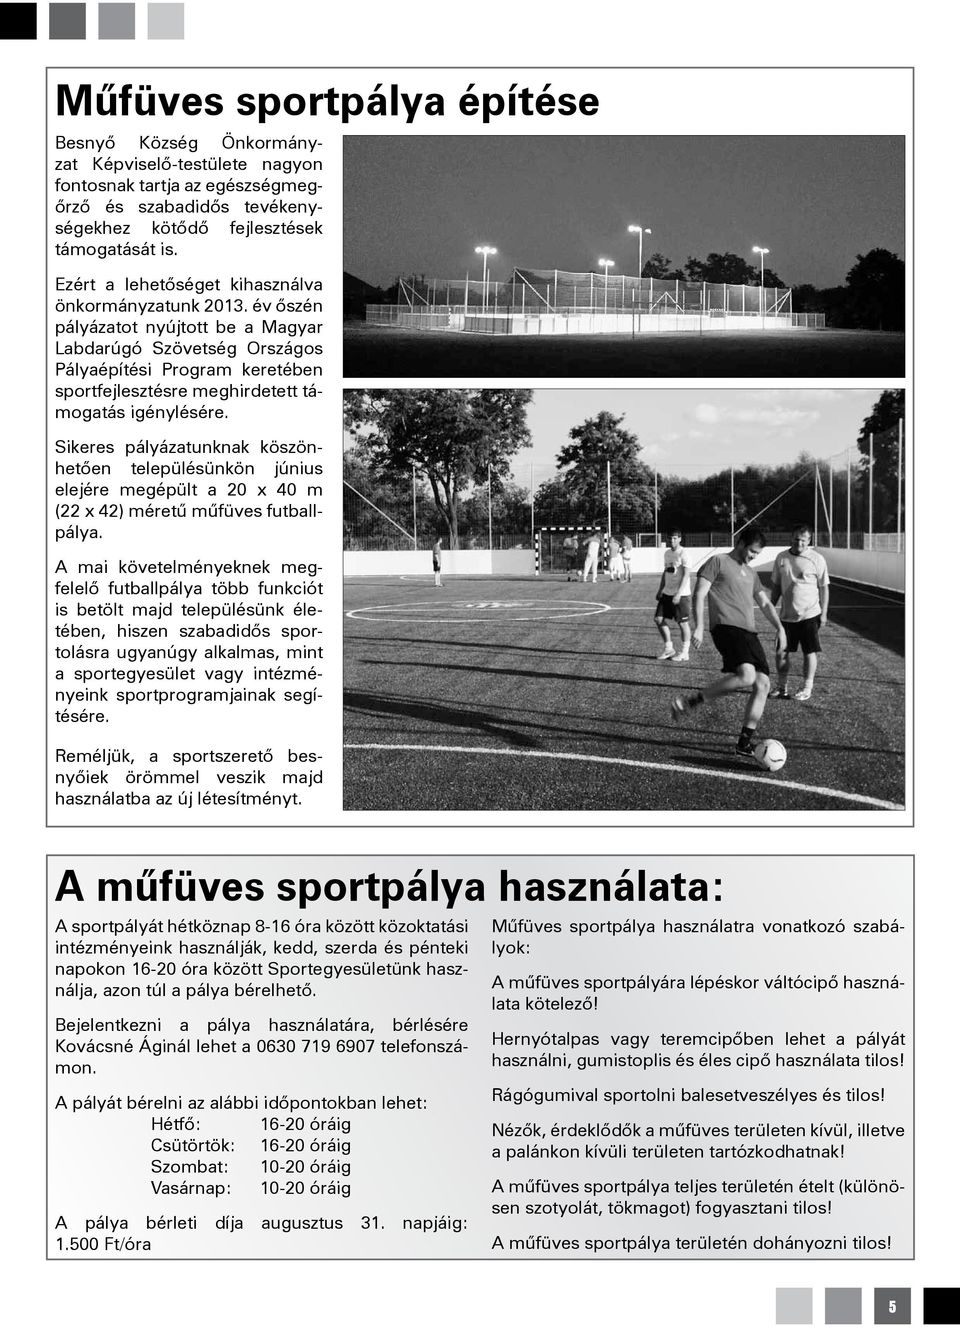 év őszén pályázatot nyújtott be a Magyar Labdarúgó Szövetség Országos Pályaépítési Program keretében sportfejlesztésre meghirdetett támogatás igénylésére.